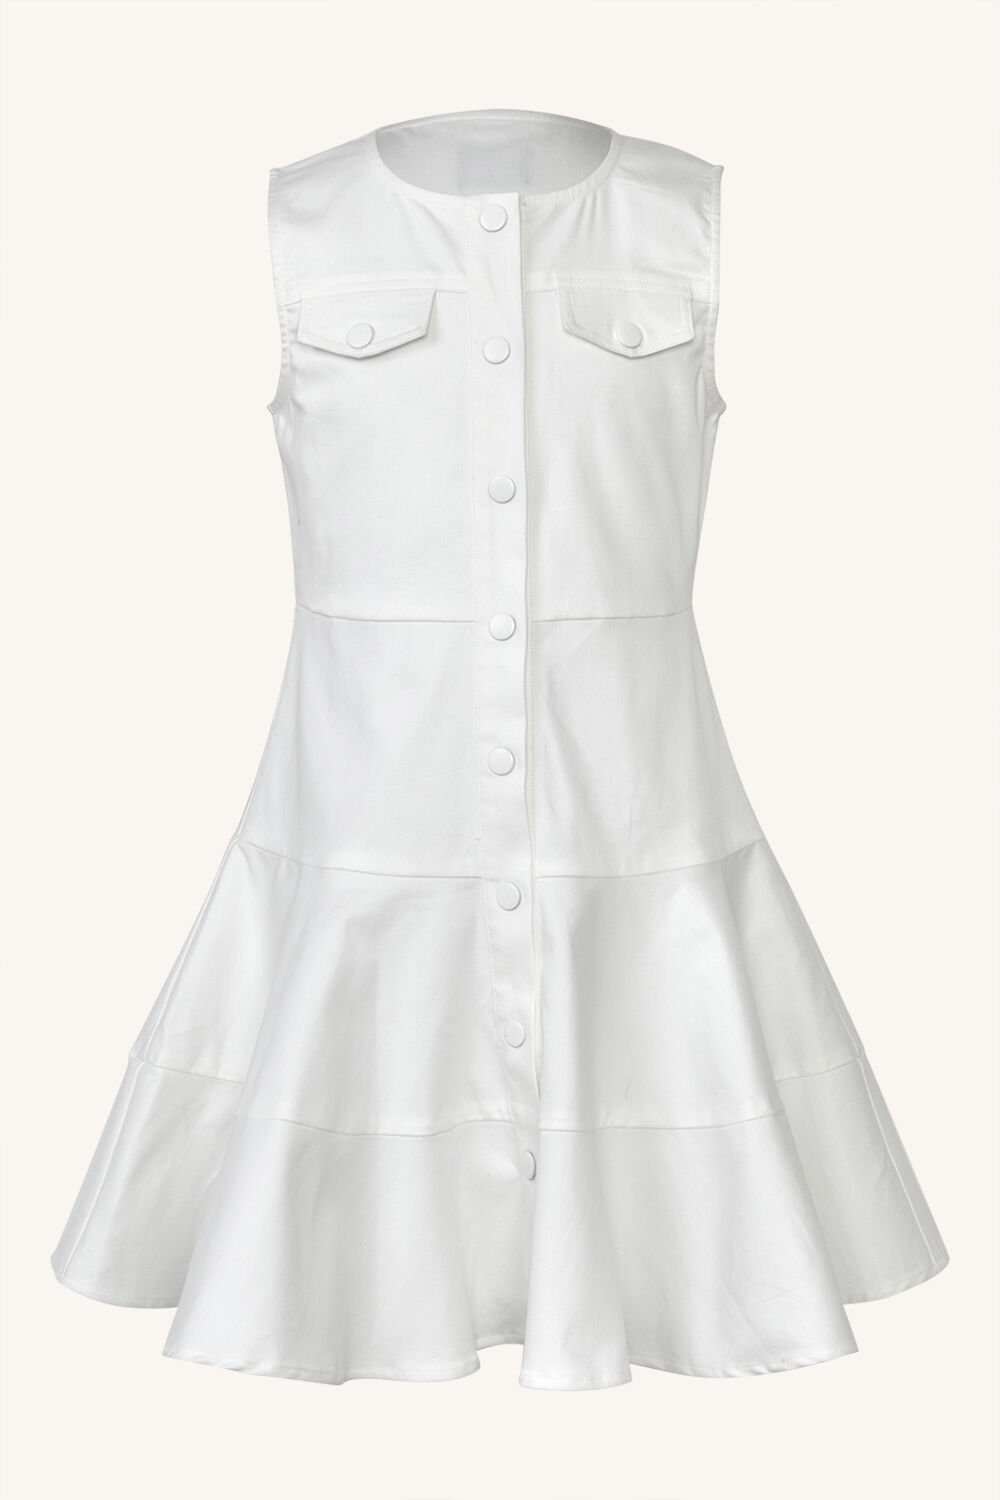 GIRLS ALICE MINI DRESS in colour BRIGHT WHITE